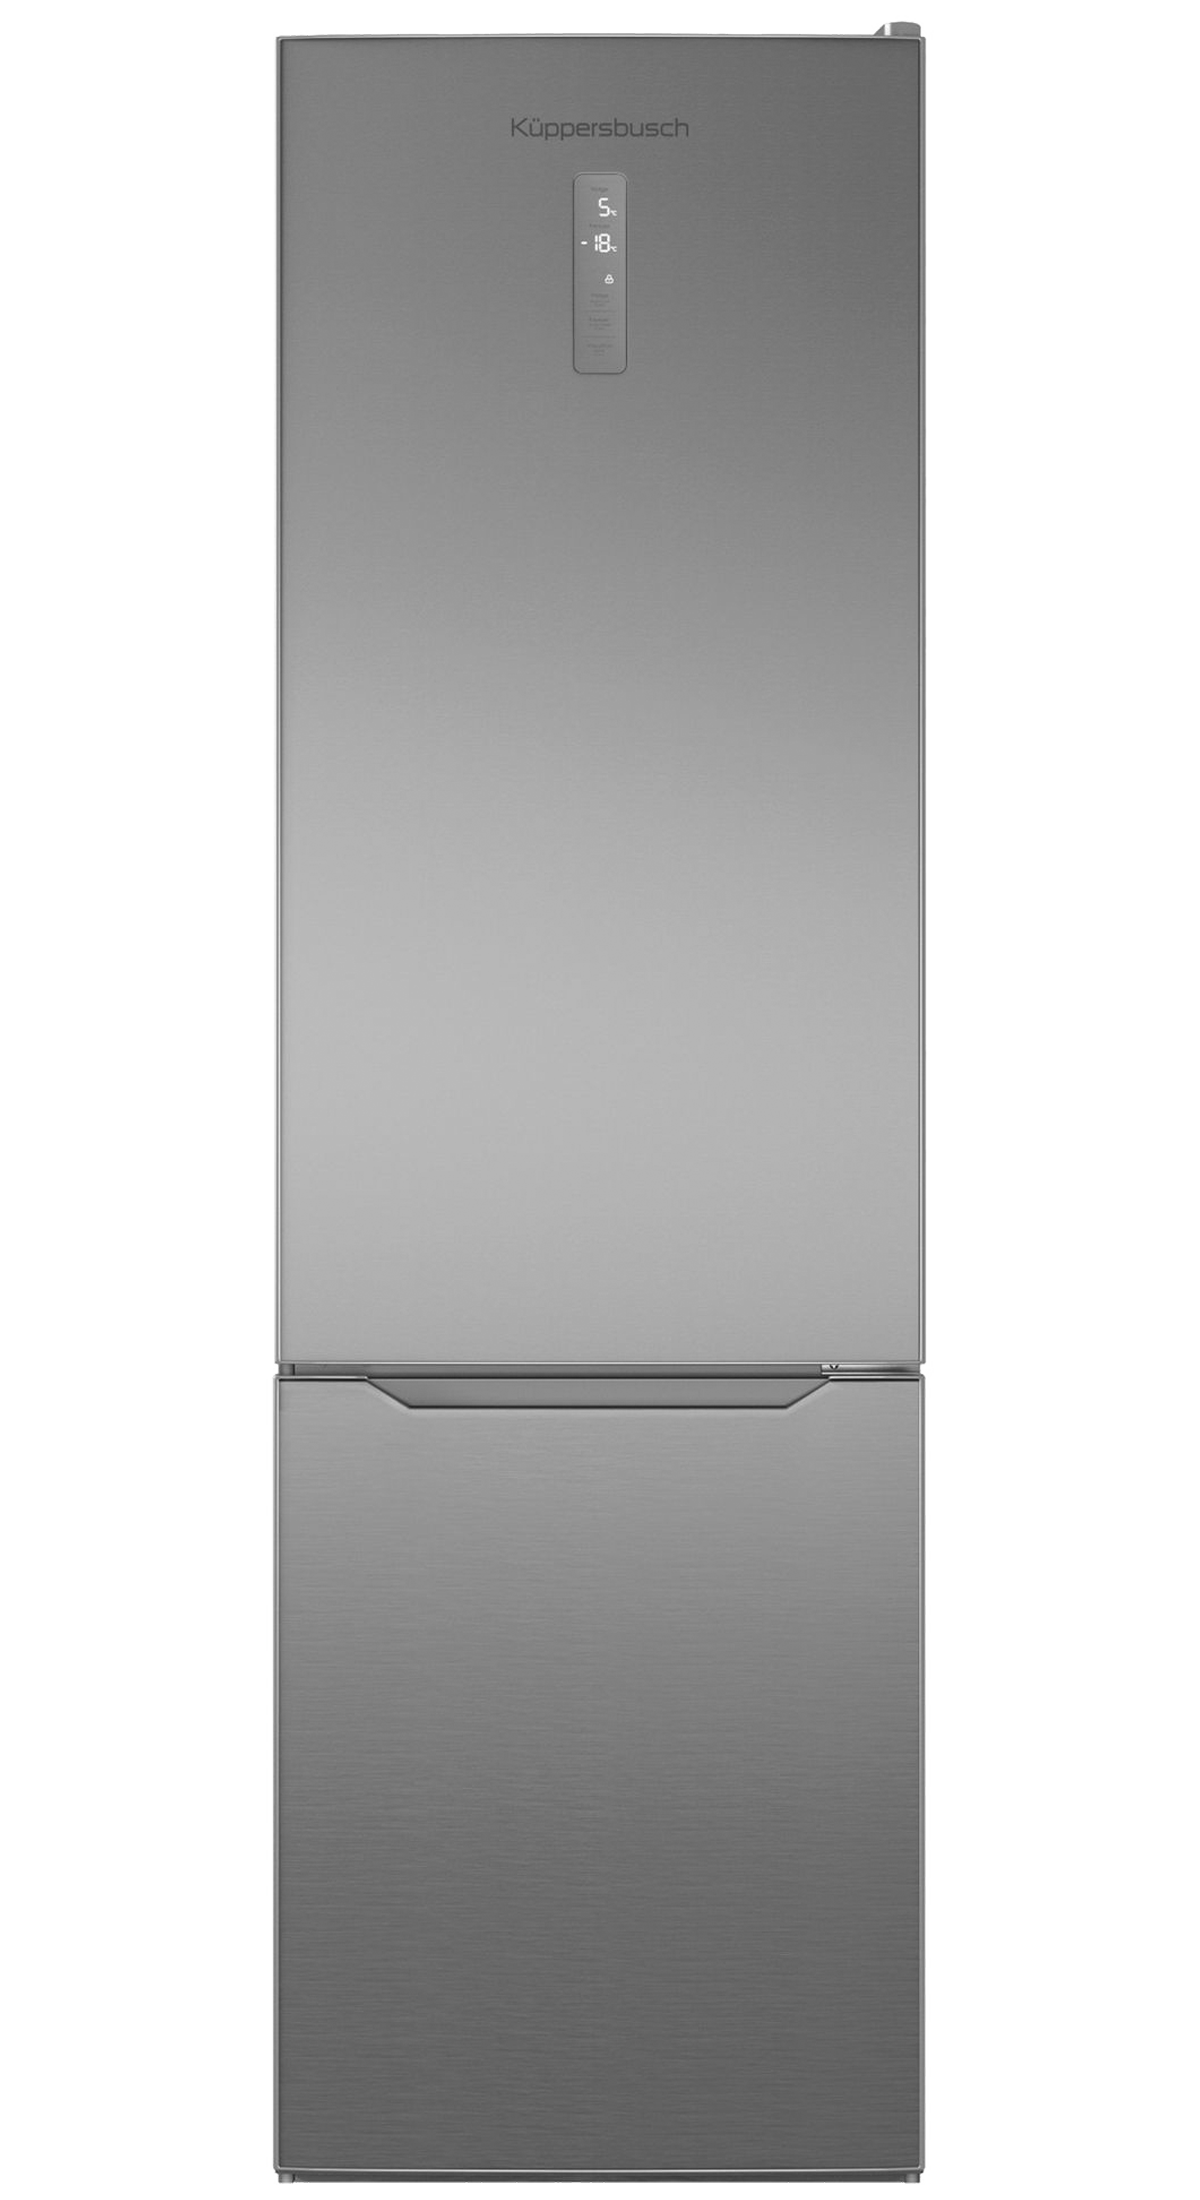 Kuppersbusch Отдельностоящий холодильник с нижней морозильной камерой Kuppersbusch FKG 6500.0 E